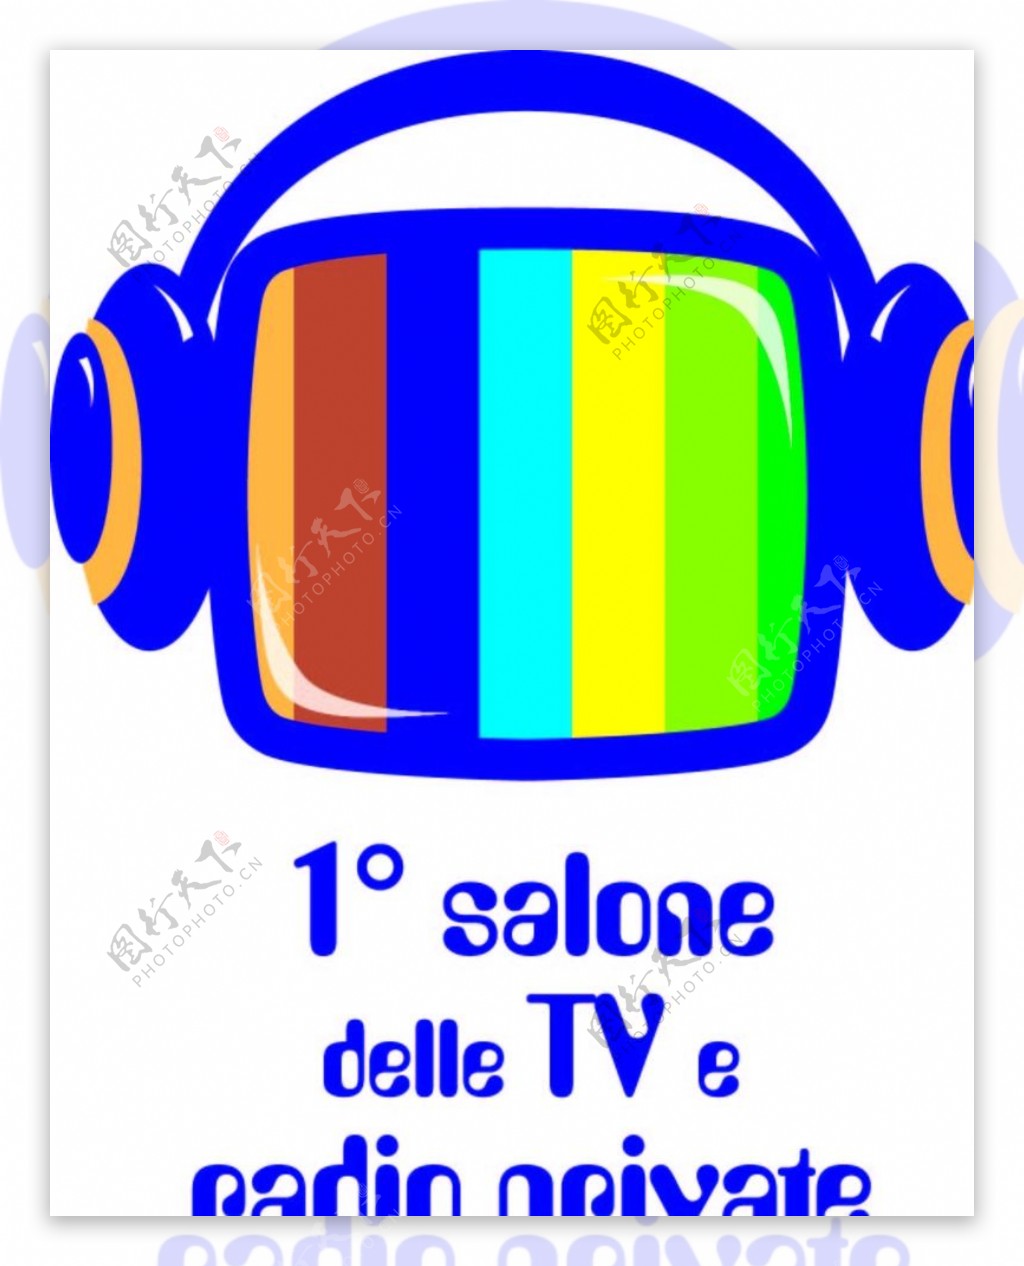 耳机耳唛logo图片